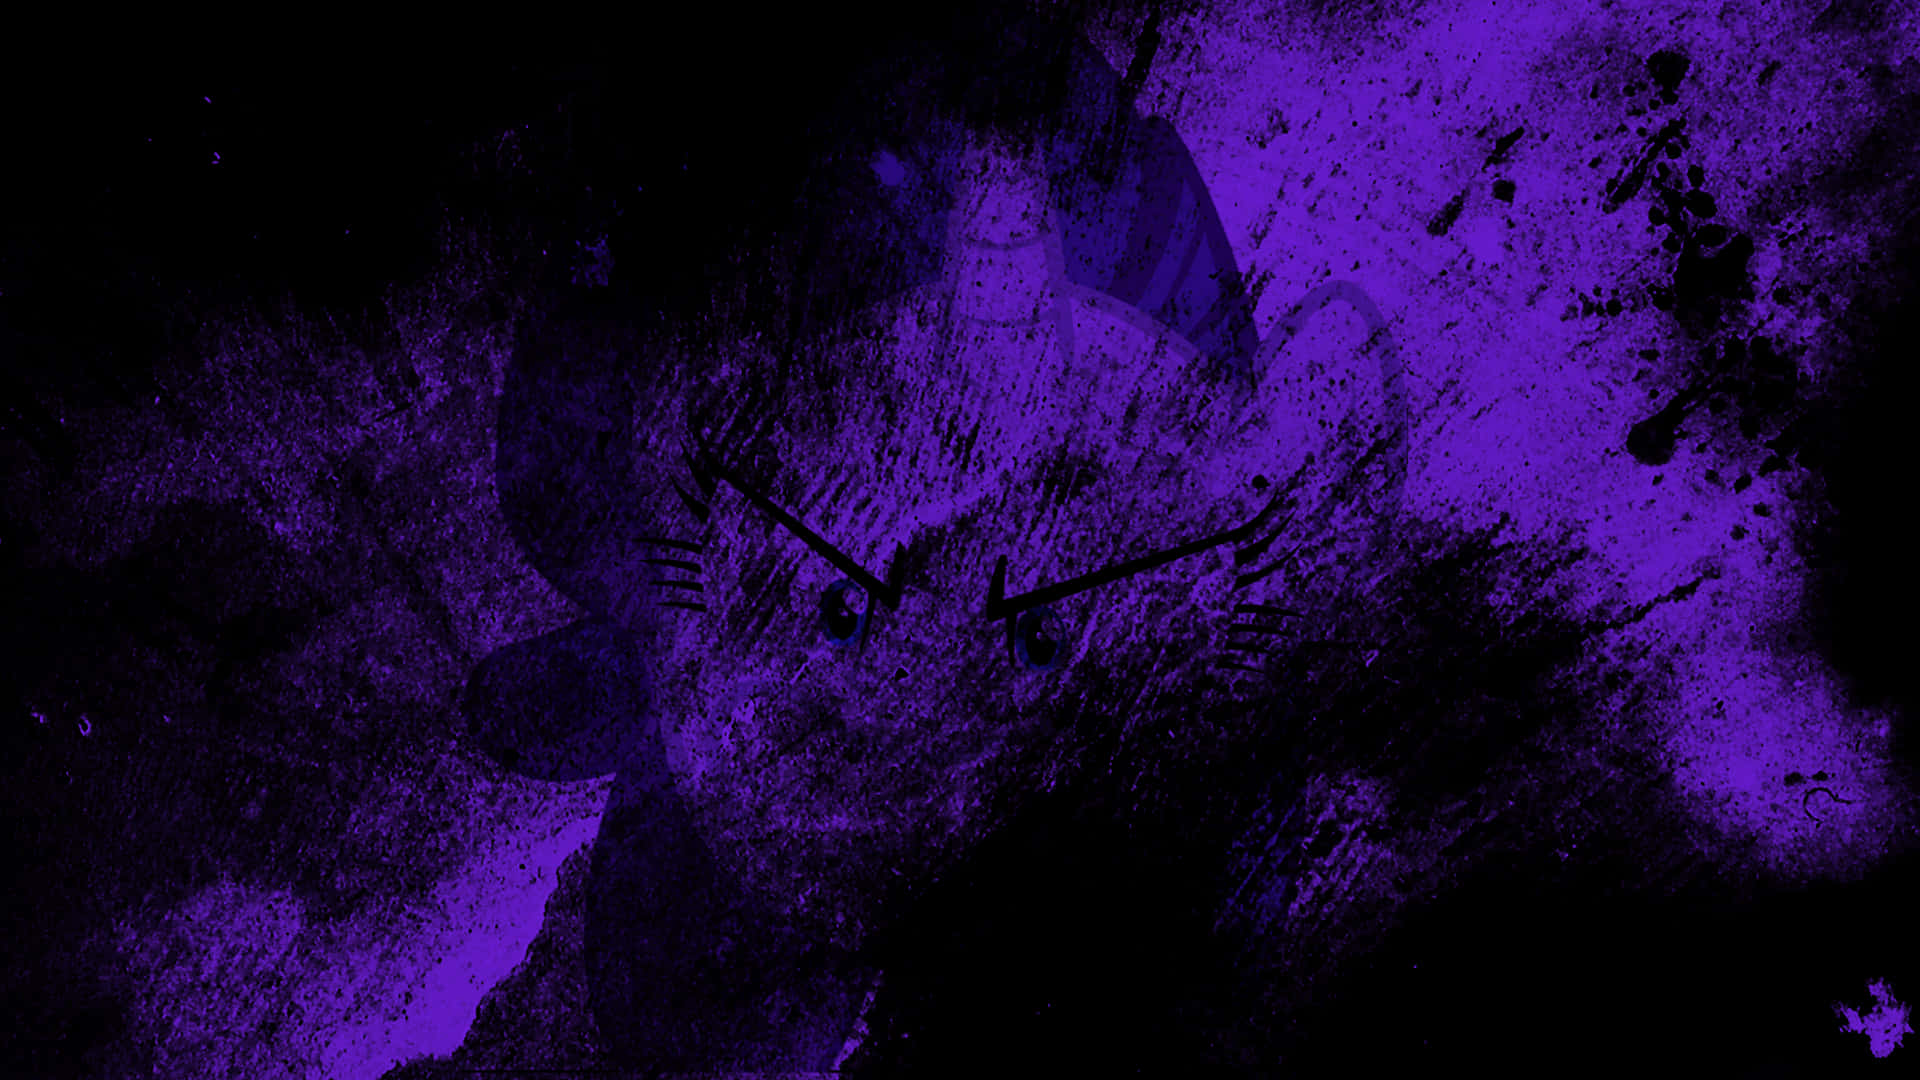 Sfondoscuro Viola Estetico Grunge Per Desktop. Sfondo